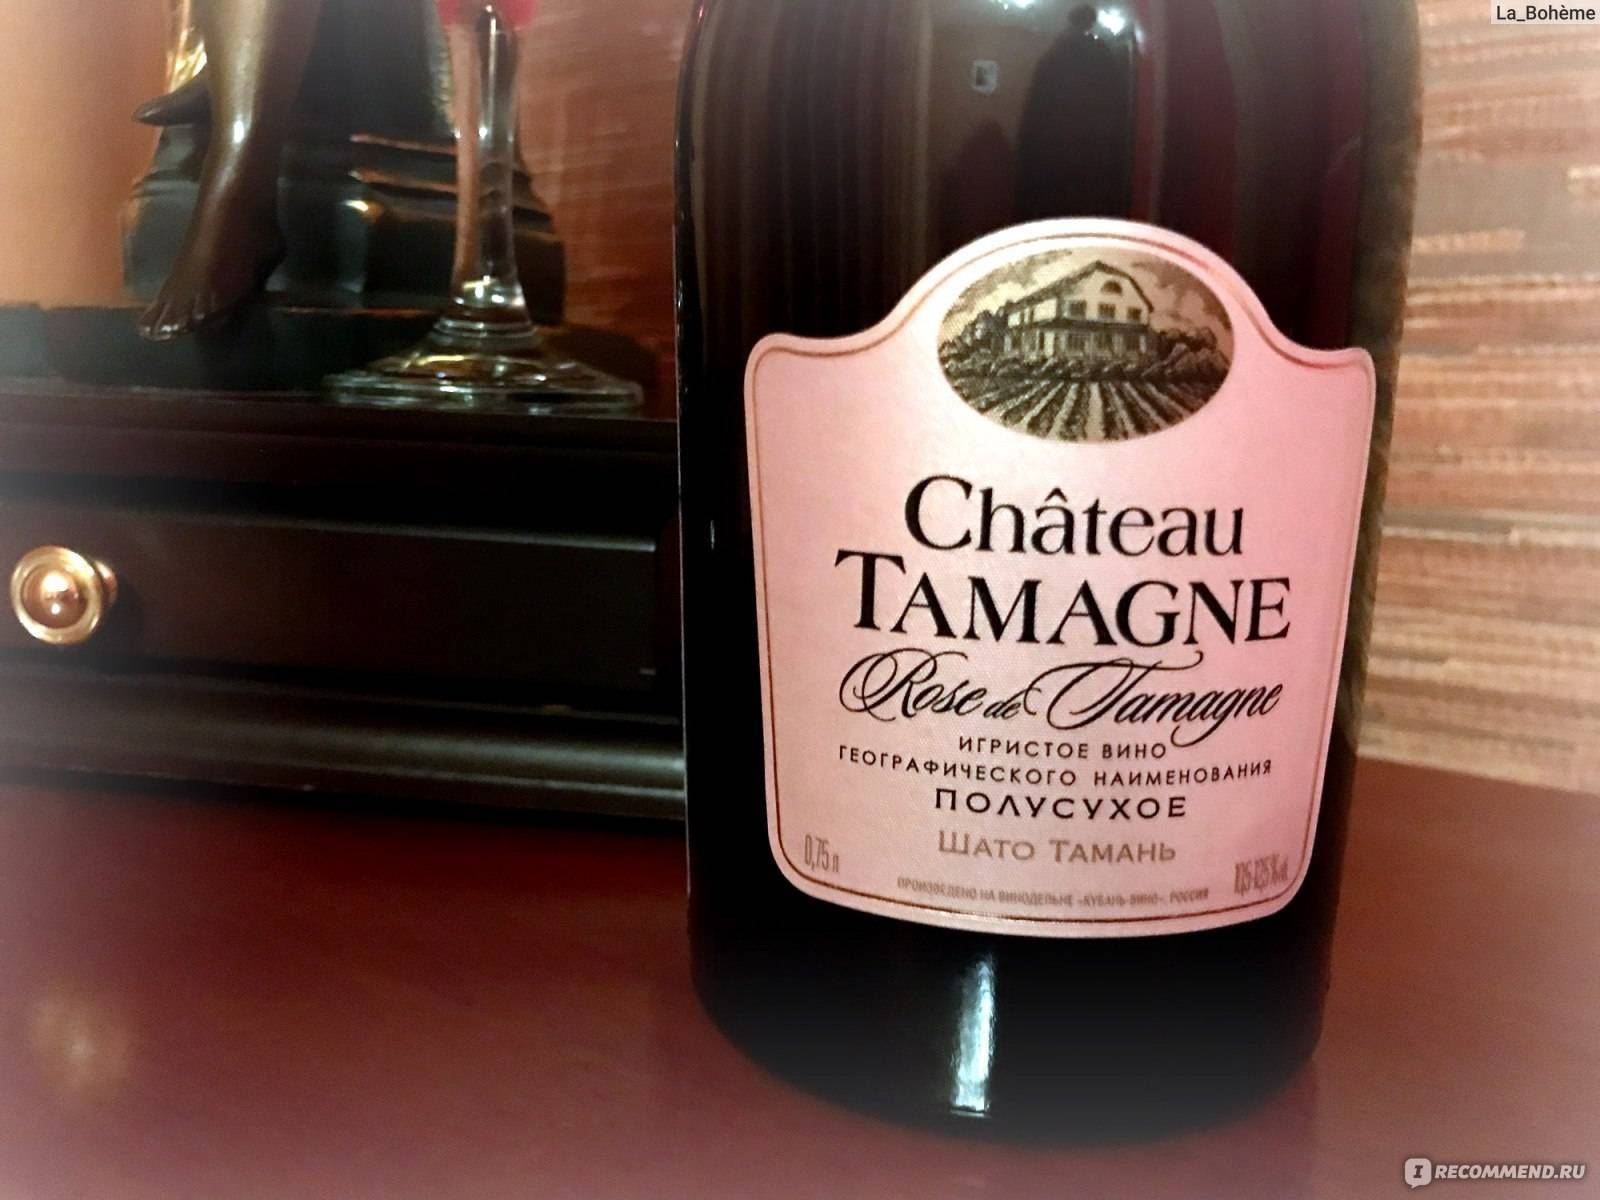 Игристое вино шато тамань (chateau tamagne) — особенности и виды шампанского